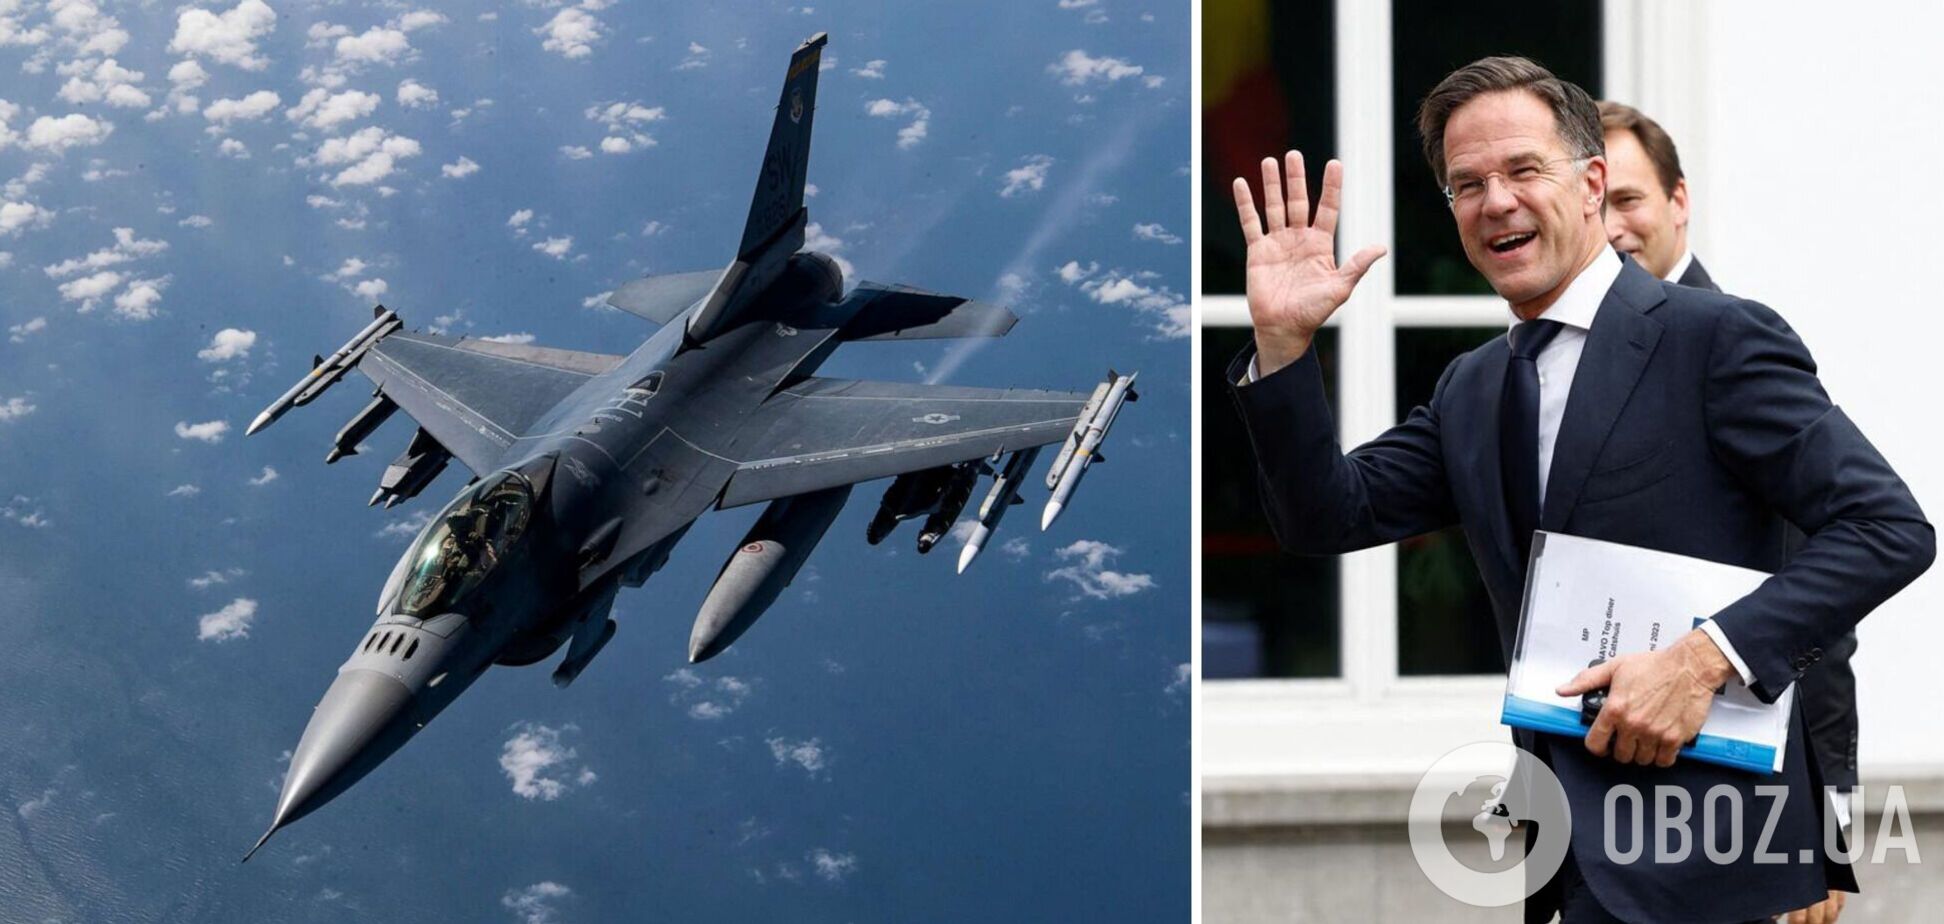 Нідерланди поставлять Україні щонайменше 24 винищувачі F-16, – Рютте